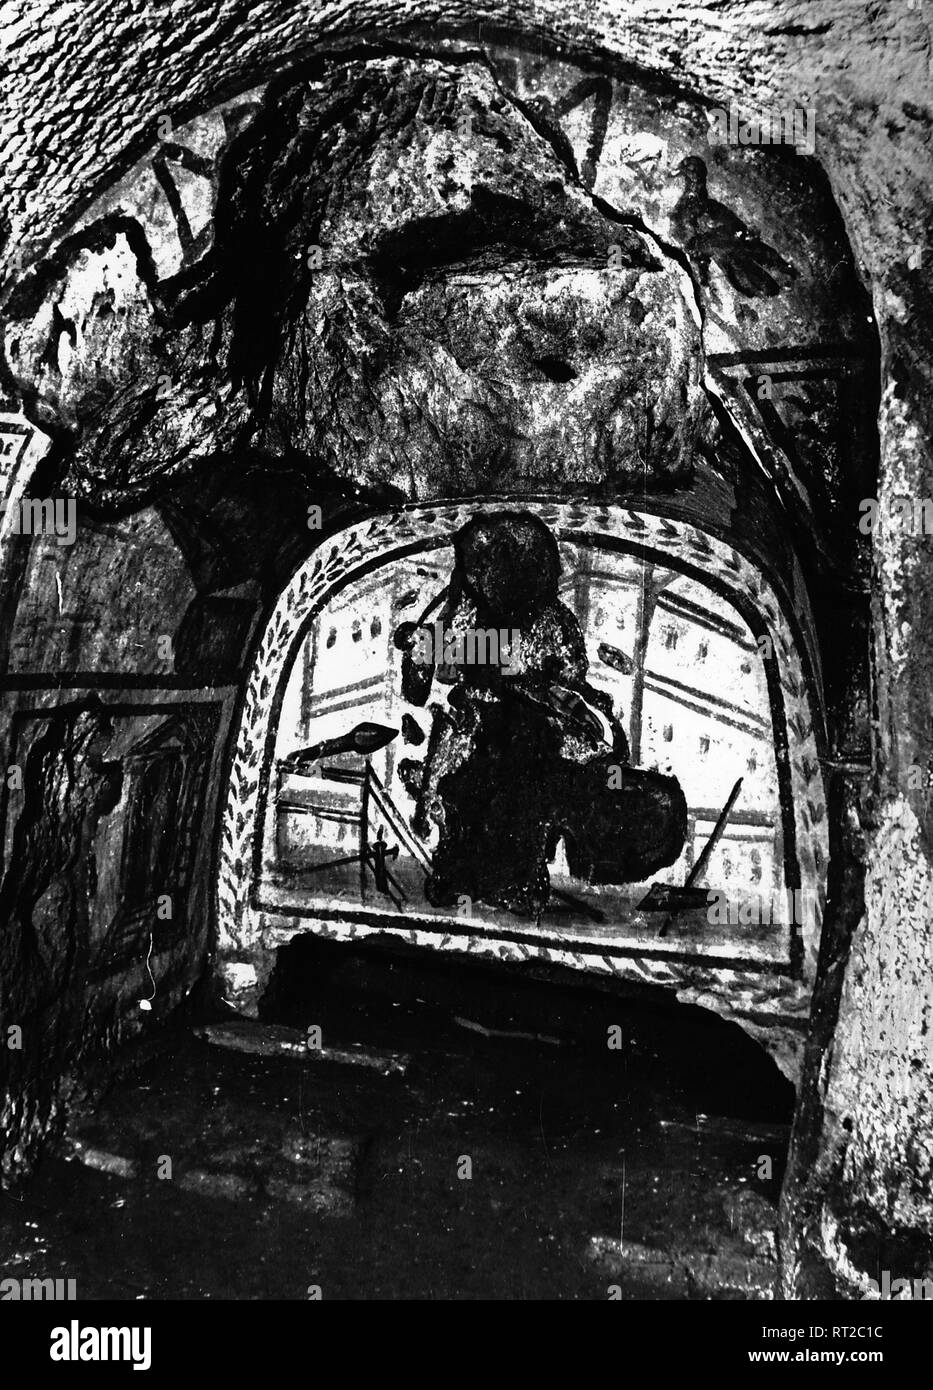 Erich Andres Italien - In den Katakomben von Rom in den 1950er Jahren: die Gruft des Totengräbers Diogenes. Das Wandbild stellt den Totengräber mit seinen Werkzeugen dar. 511/16 Stock Photo